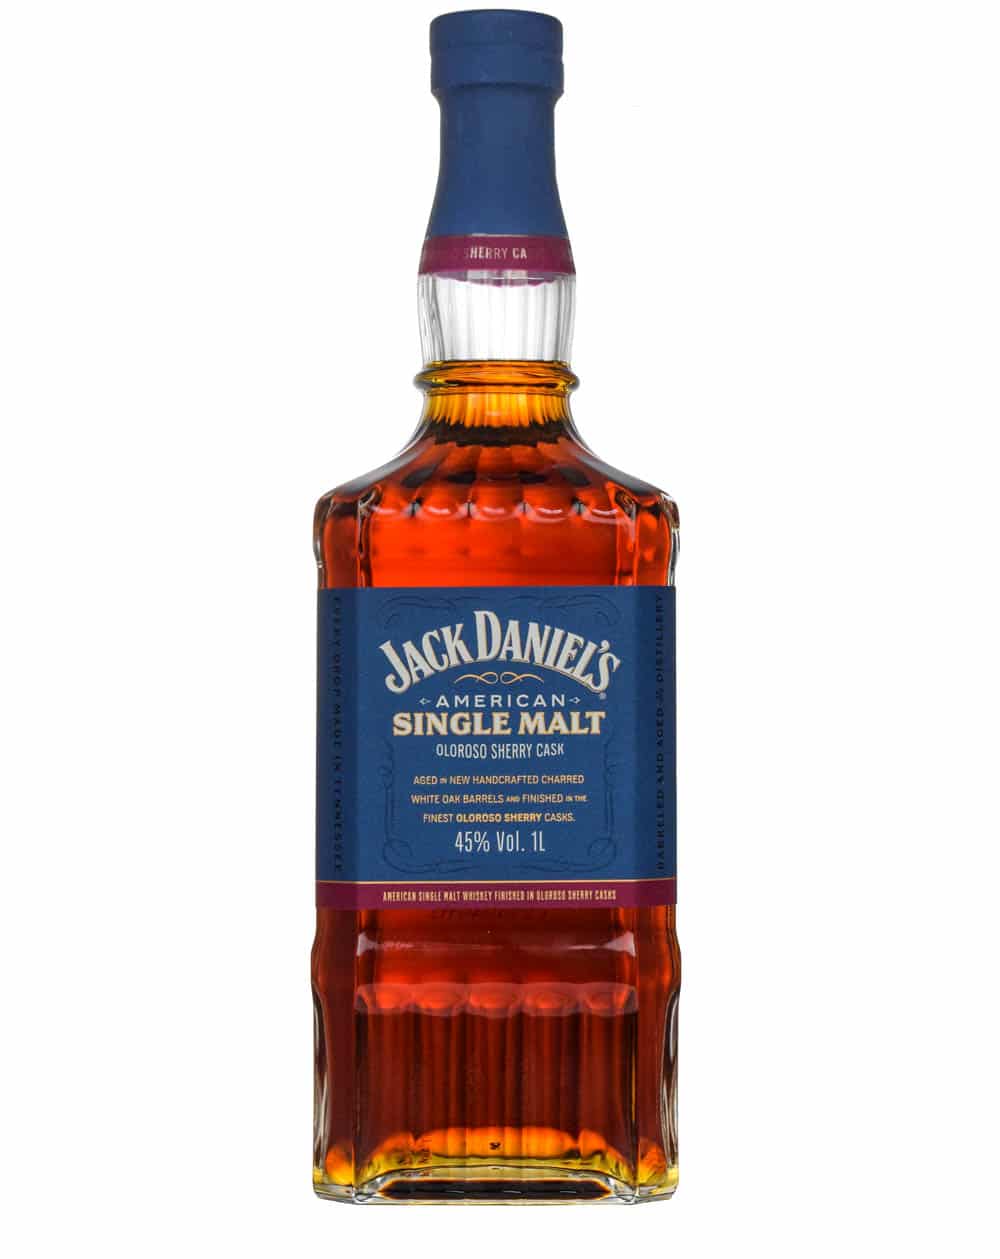 Jack Daniel's Single Malt Olorosso Sherry Cask Must Have Malts MHM